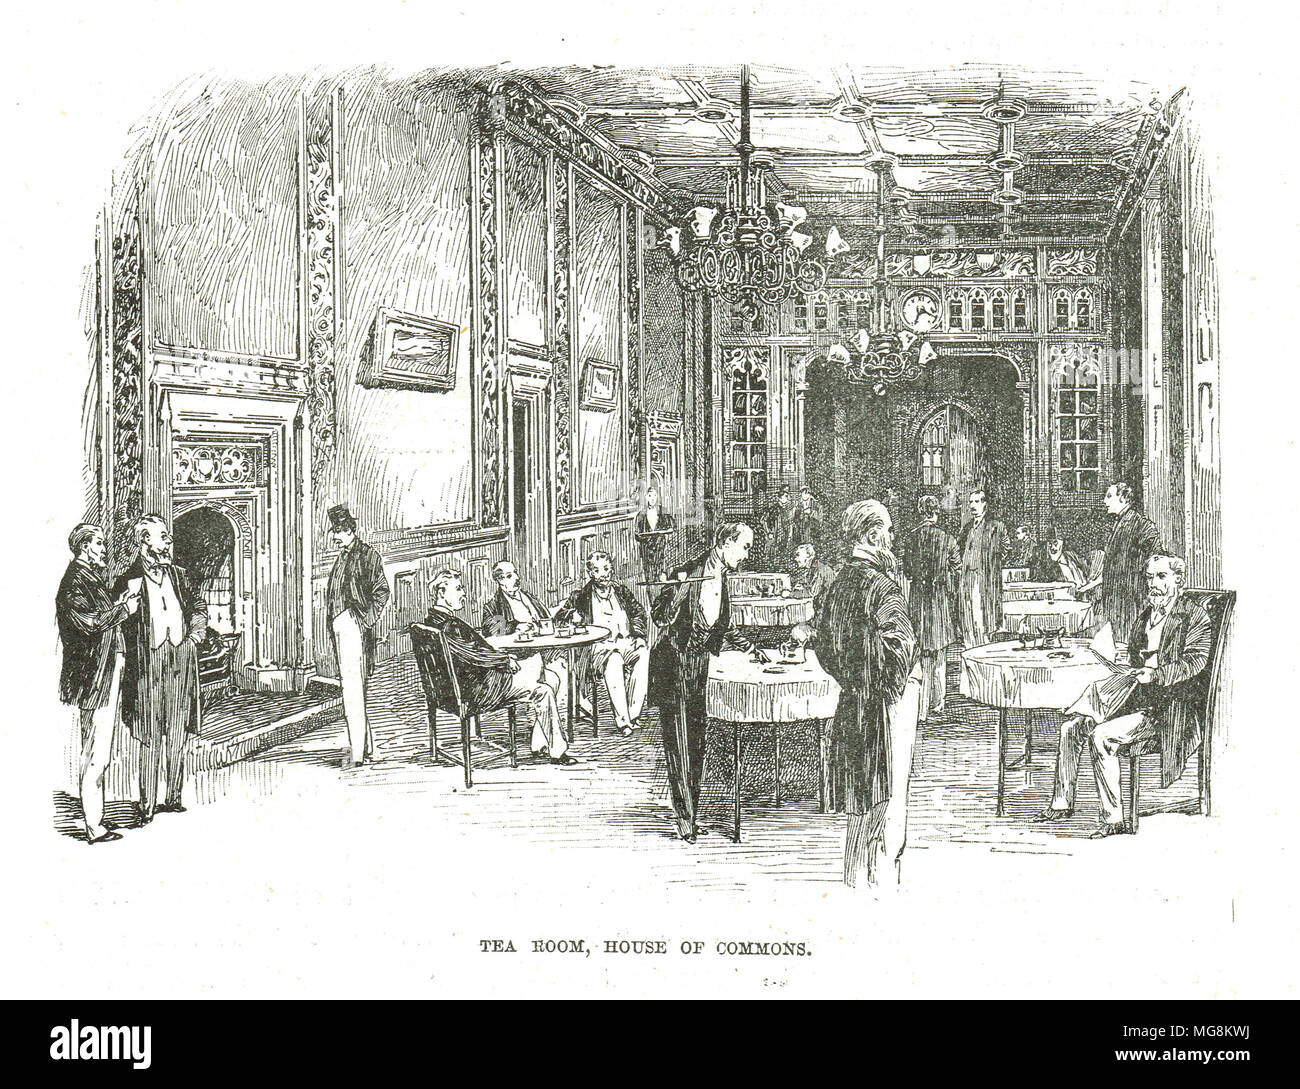 Salon de thé, Chambre des communes, 19e siècle, le palais de Westminster, Londres, Angleterre Banque D'Images